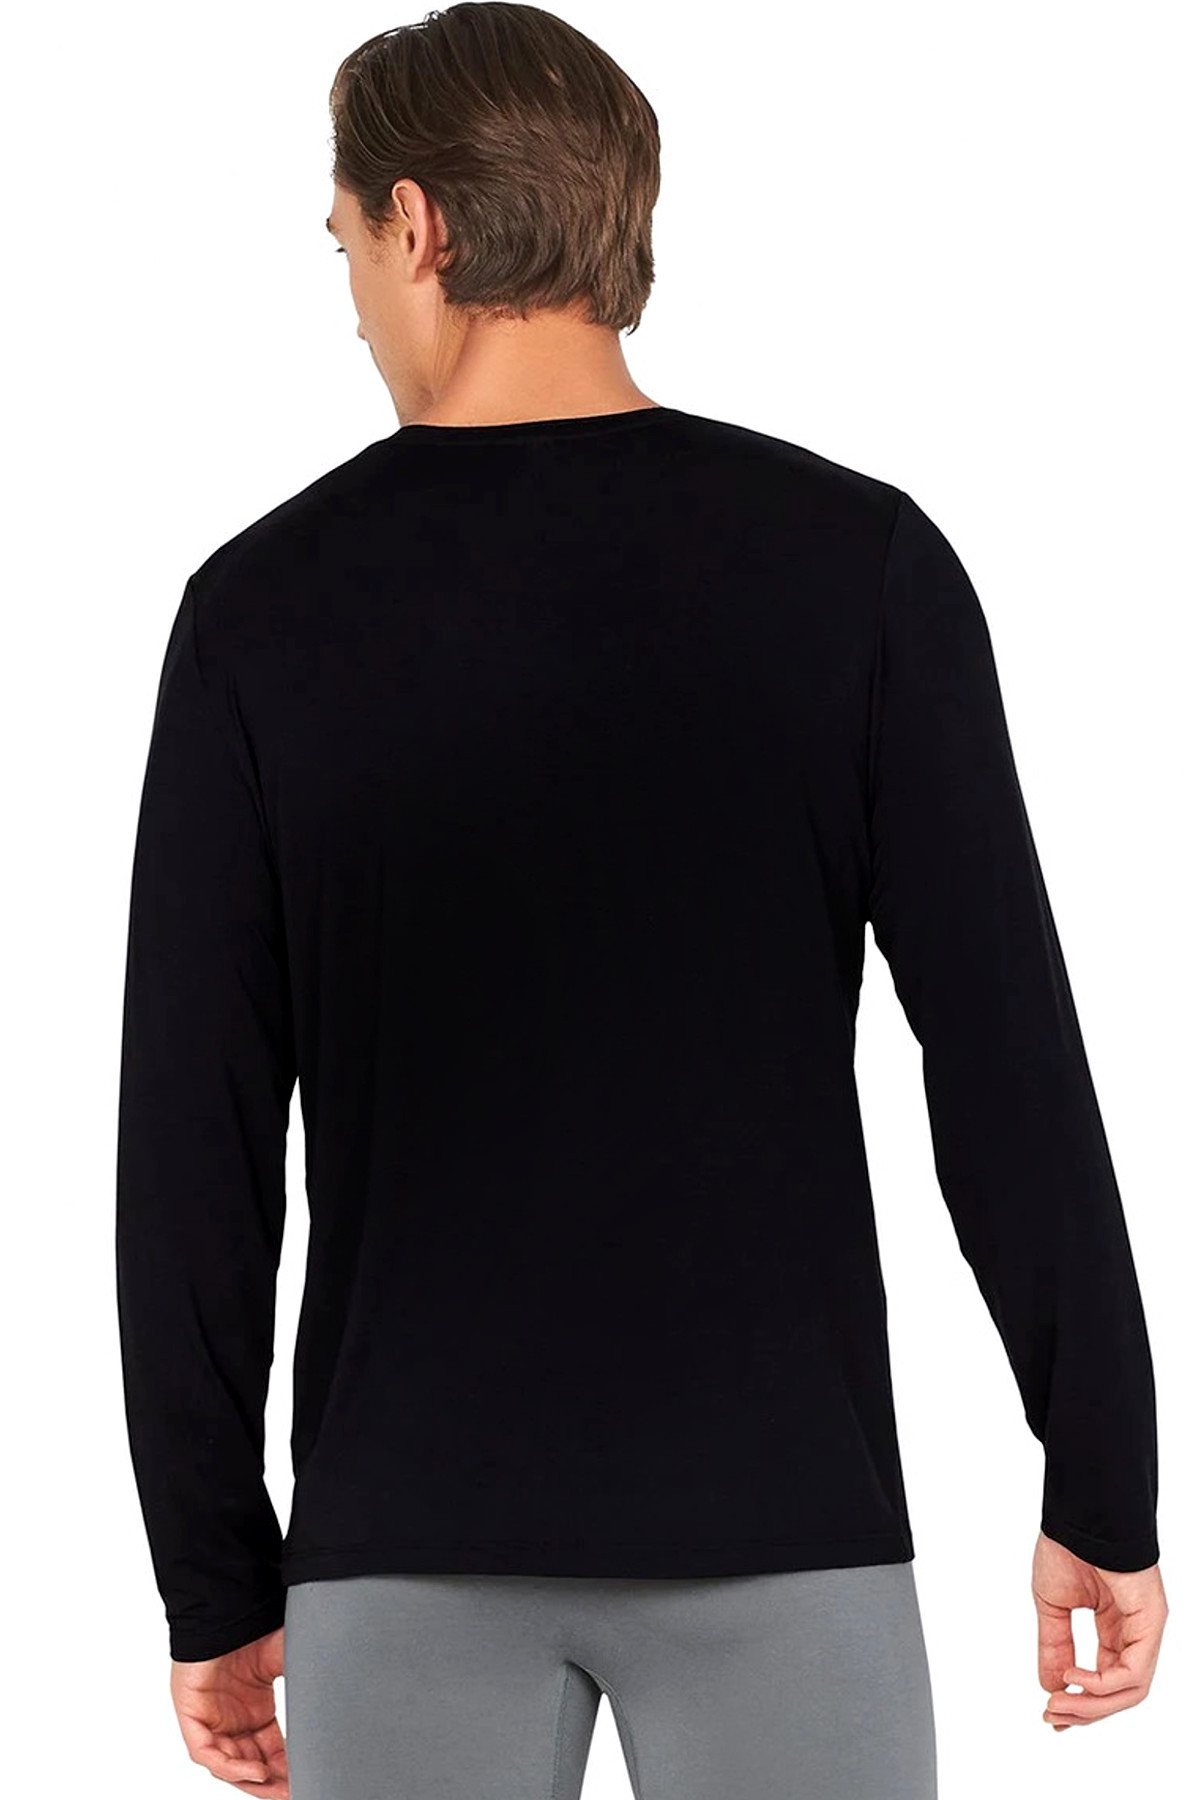 Sütlü Sade Siyah Bisiklet Yaka Uzun Kollu Penye Erkek T-shirt